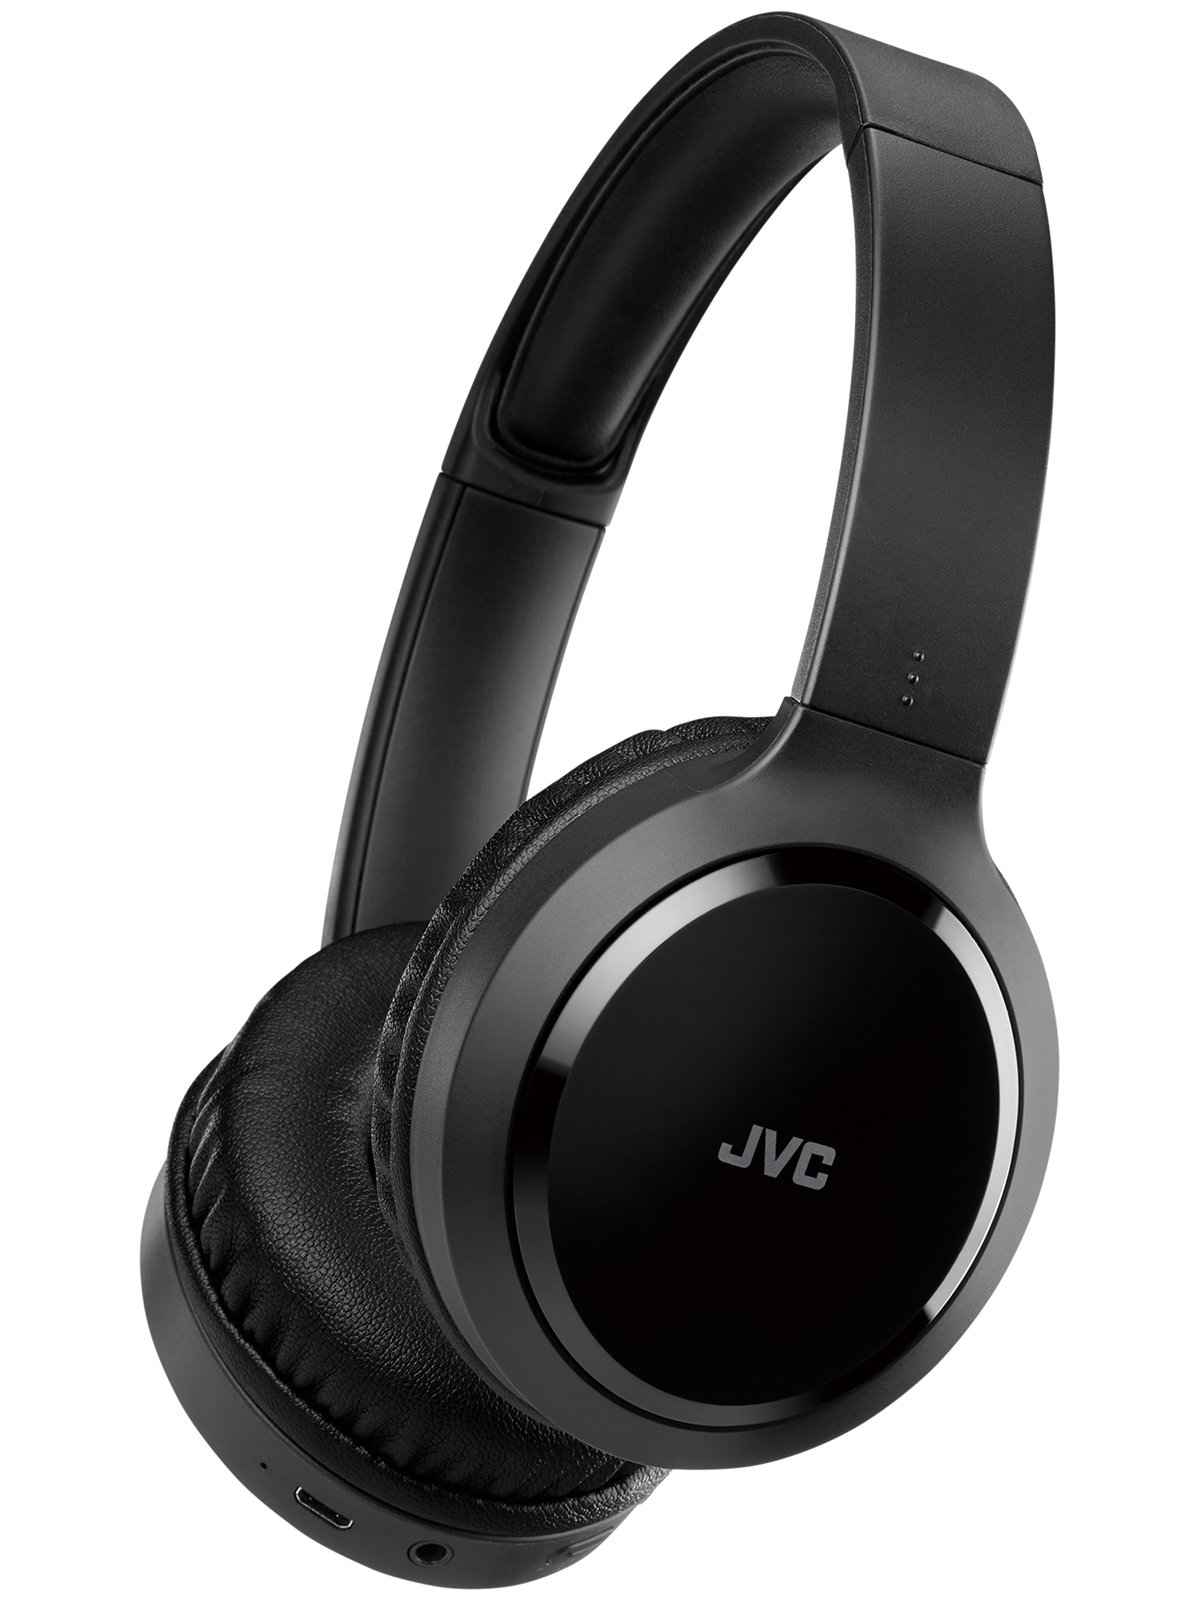 JVCケンウッド ワイヤレスステレオヘッドセット HA-S78BN JVC ヘッドホン本体の商品画像